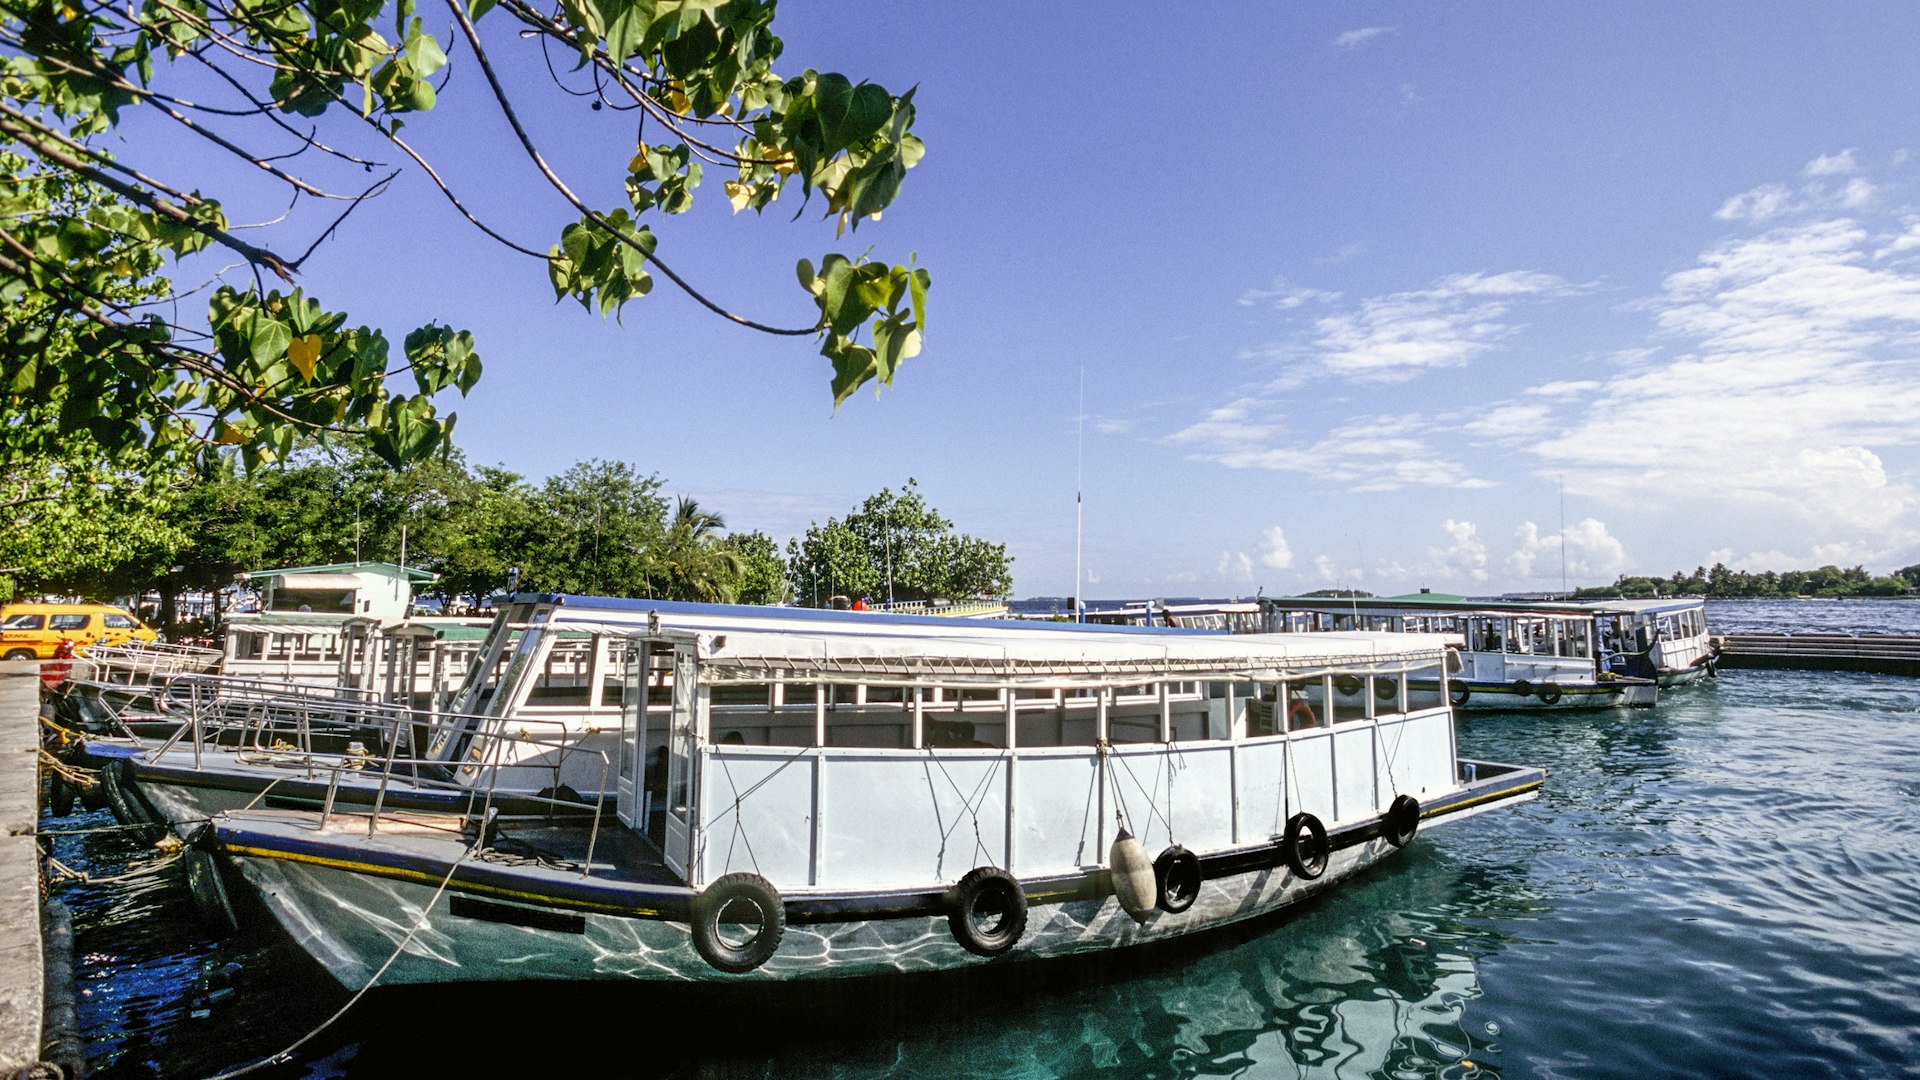 passenger ferry dhoni boats in North Malé atoll harbor, Maldives